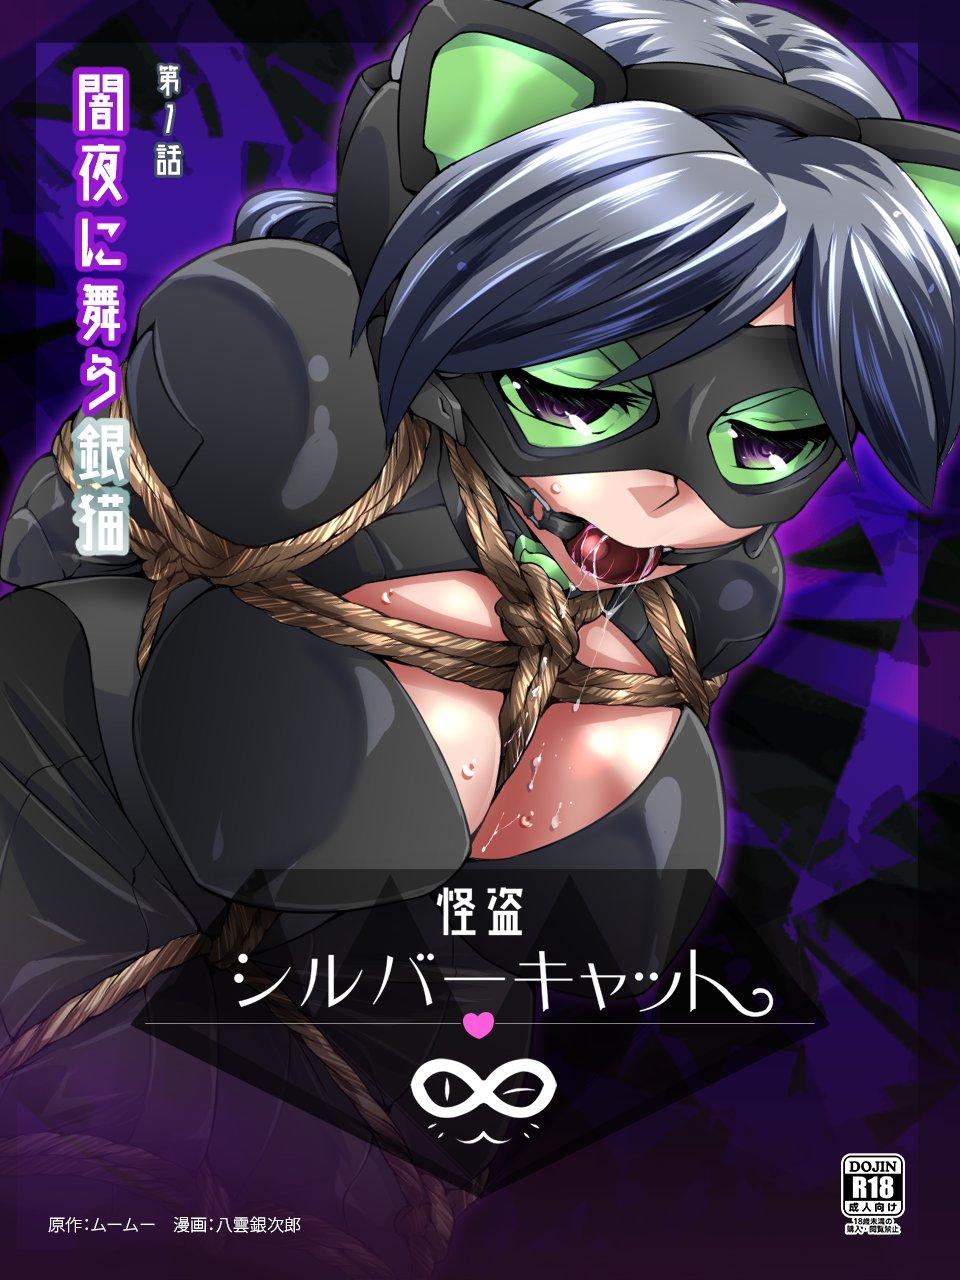 Twerking Kaitou Silver Cat Manga Ban Dai 1-wa - Original Boobs - Picture 1